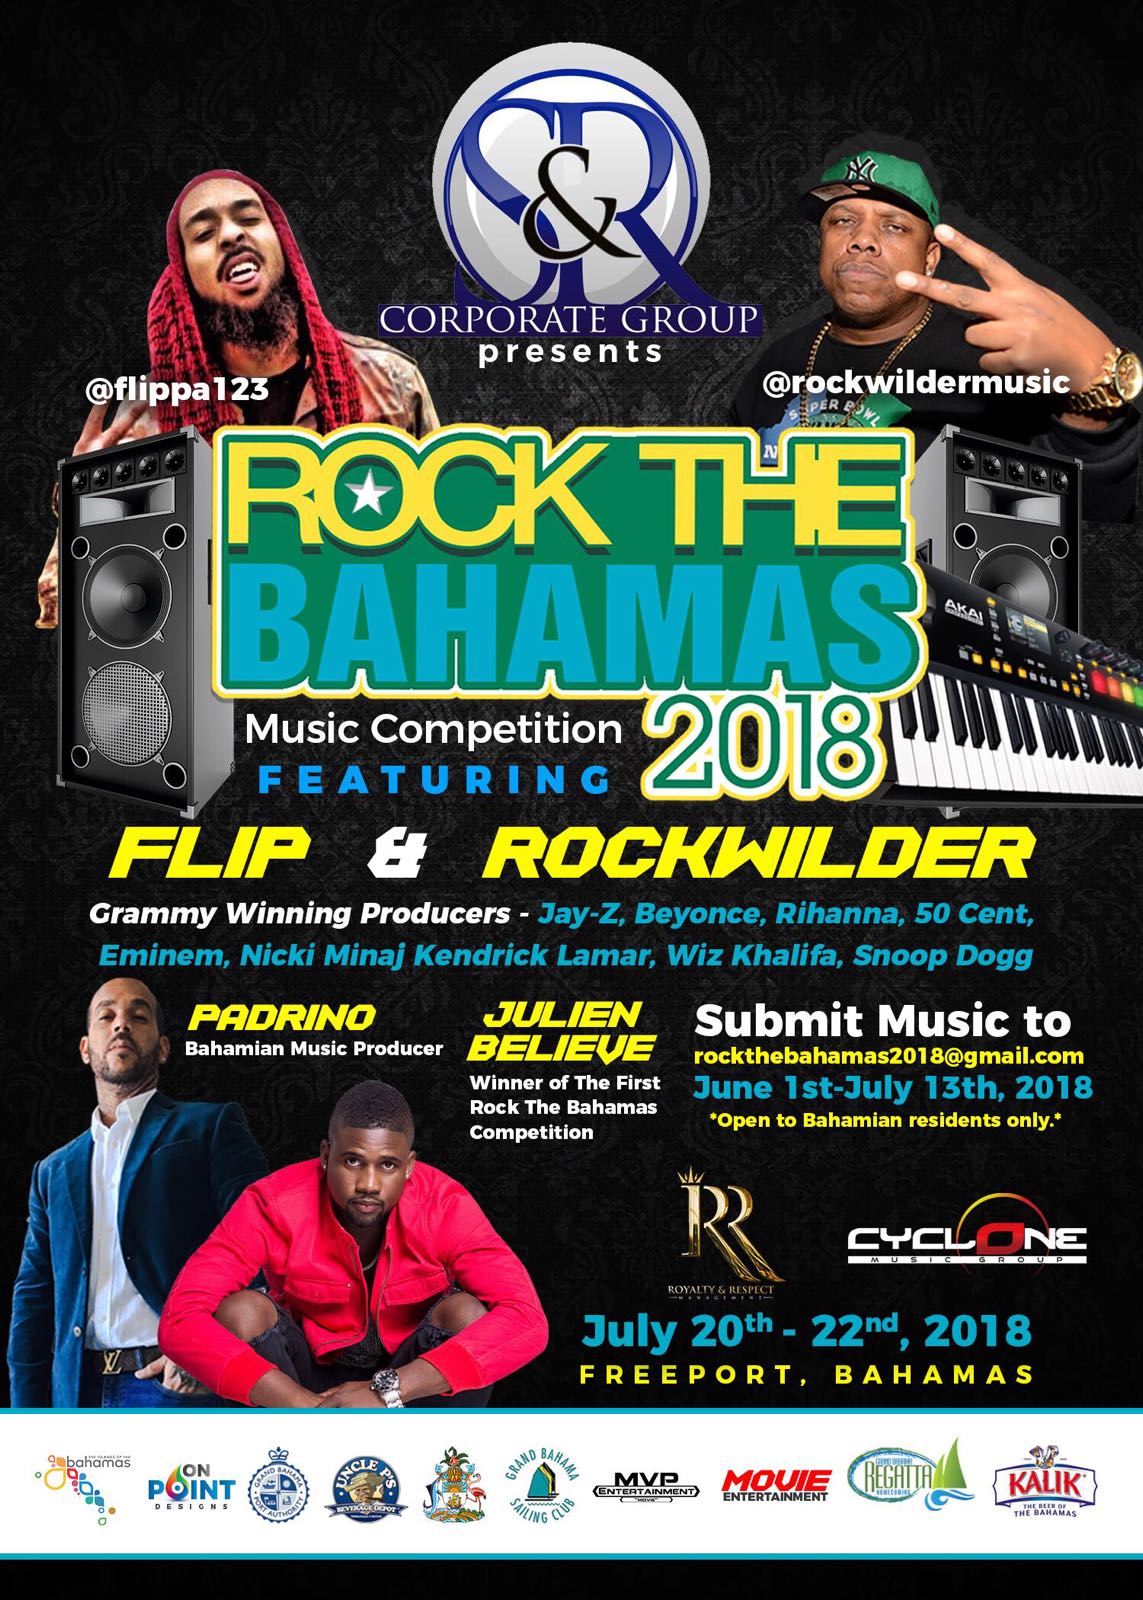 Rock the bahamas